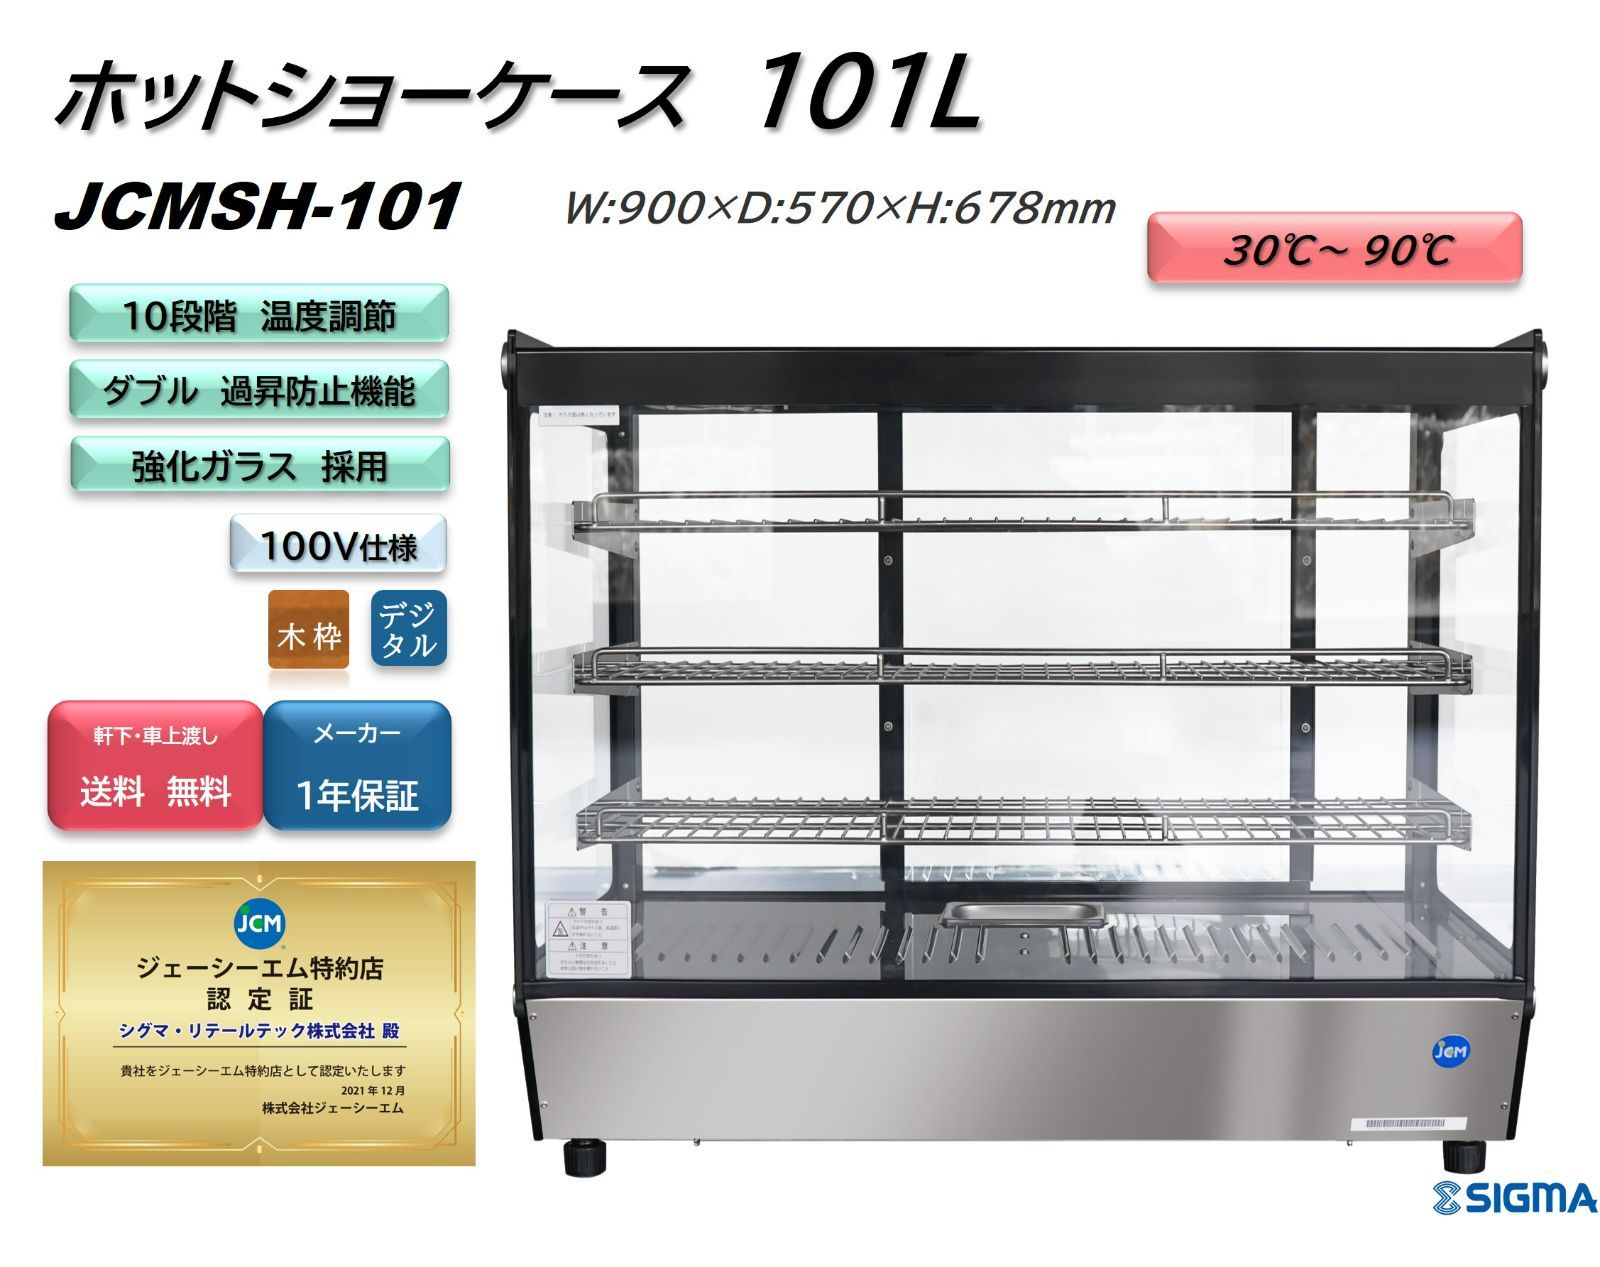 JCMSH-101卓上型ホットショーケース（角型）【新品 保証付】 - シグマ